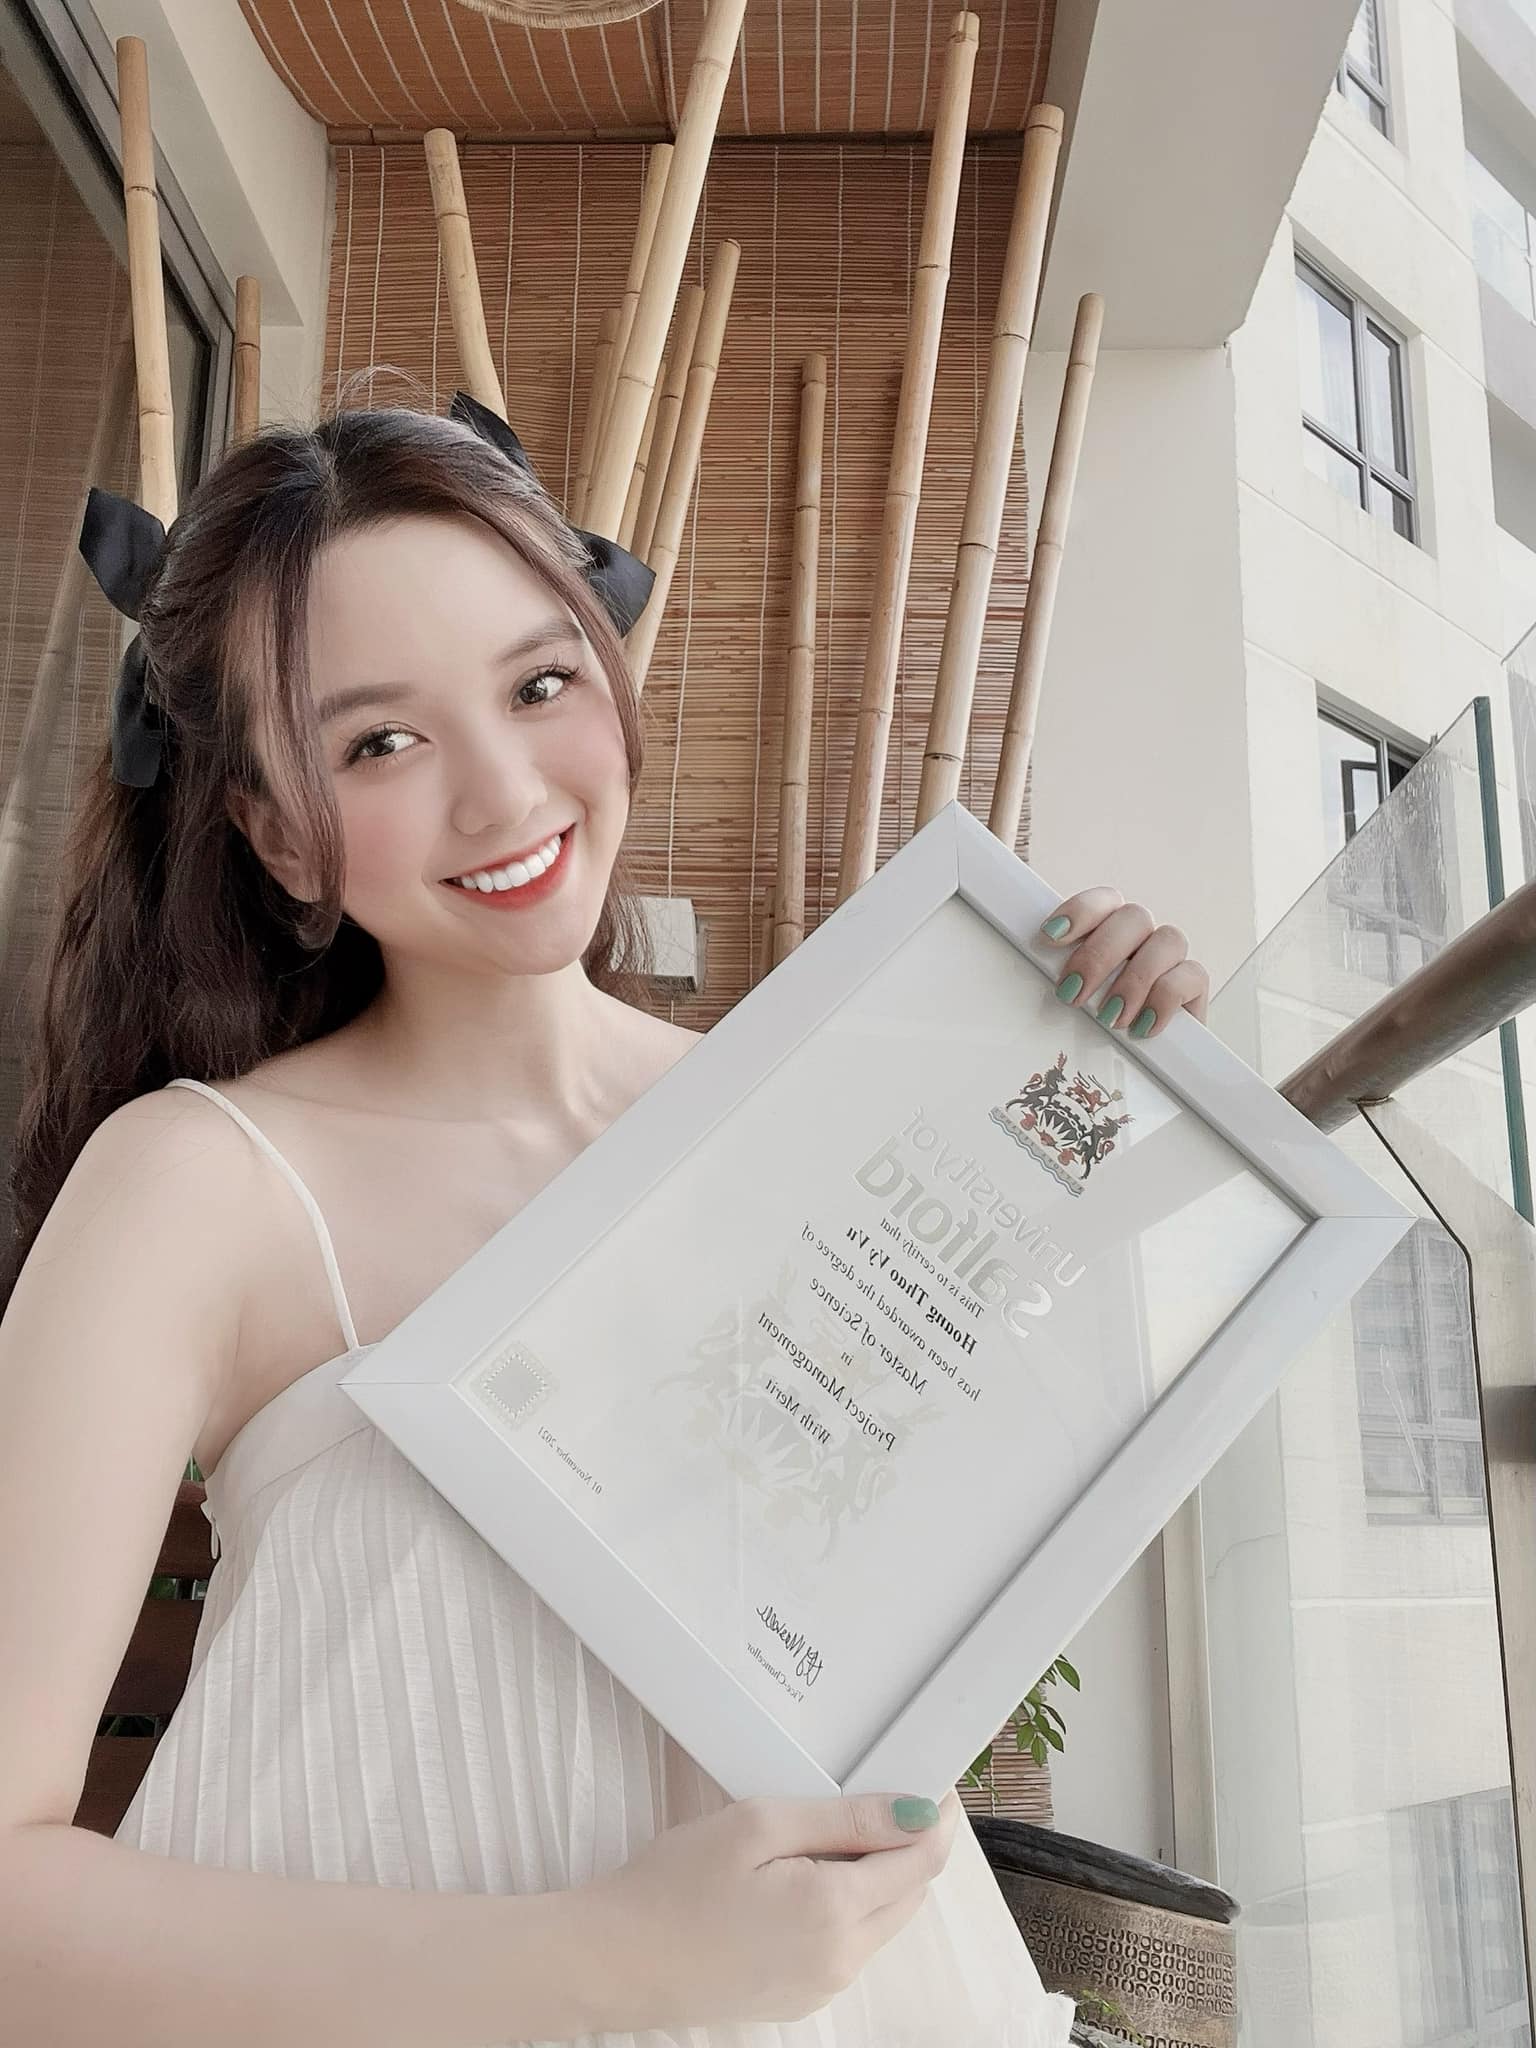 Người đẹp Hoa hậu Việt Nam vừa tiết lộ thành tích học tập cực khủng, đã xinh lại còn giỏi: Giành bằng thạc sĩ của Anh, IELTS 7.0, tốt nghiệp RMIT - Ảnh 1.